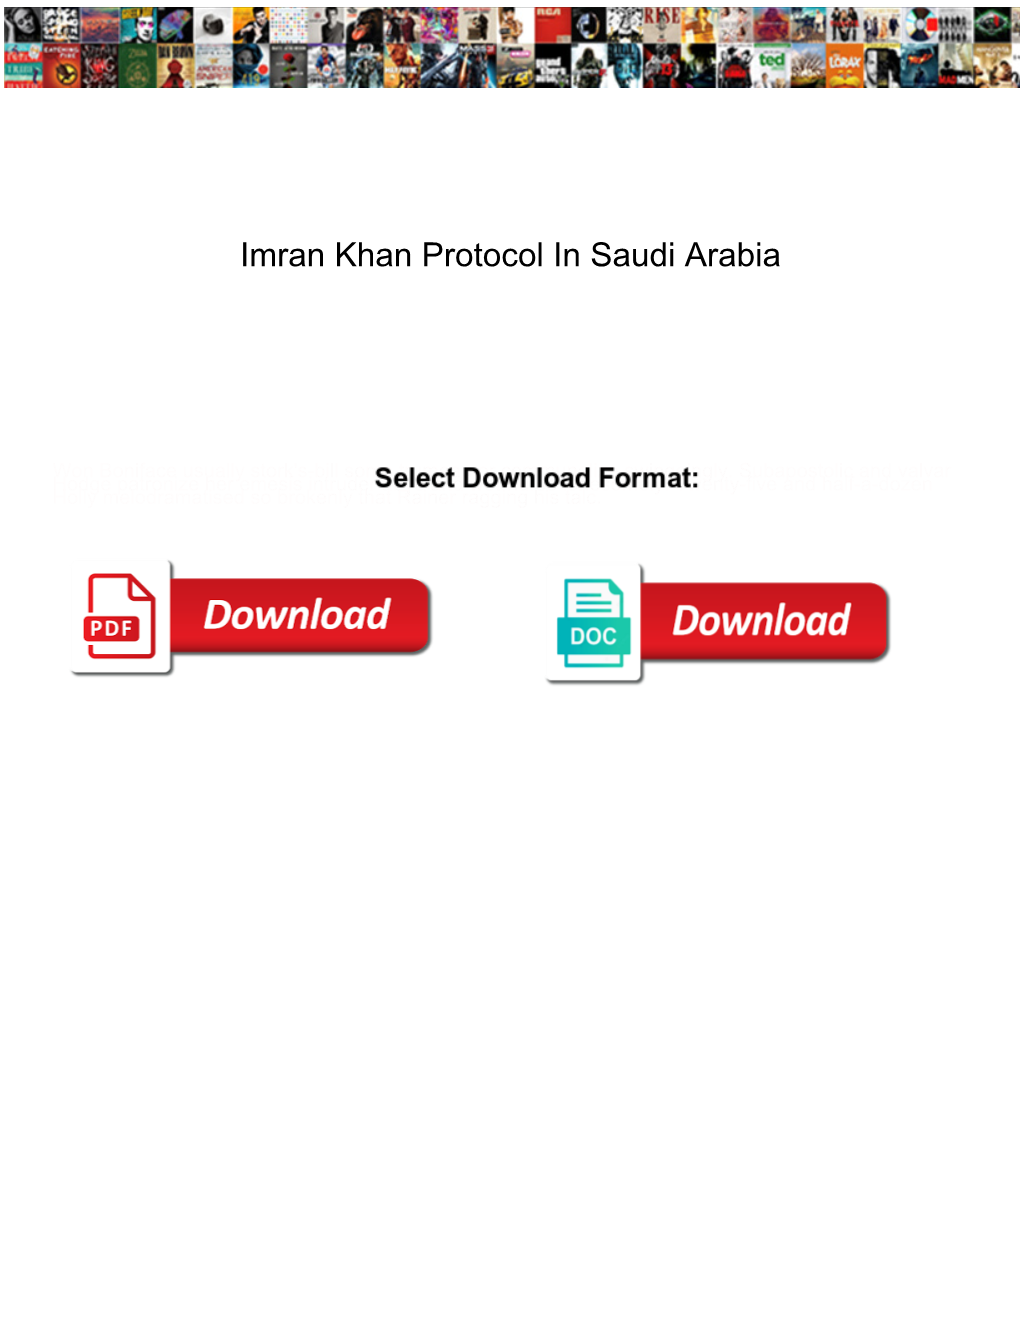 Imran Khan Protocol in Saudi Arabia